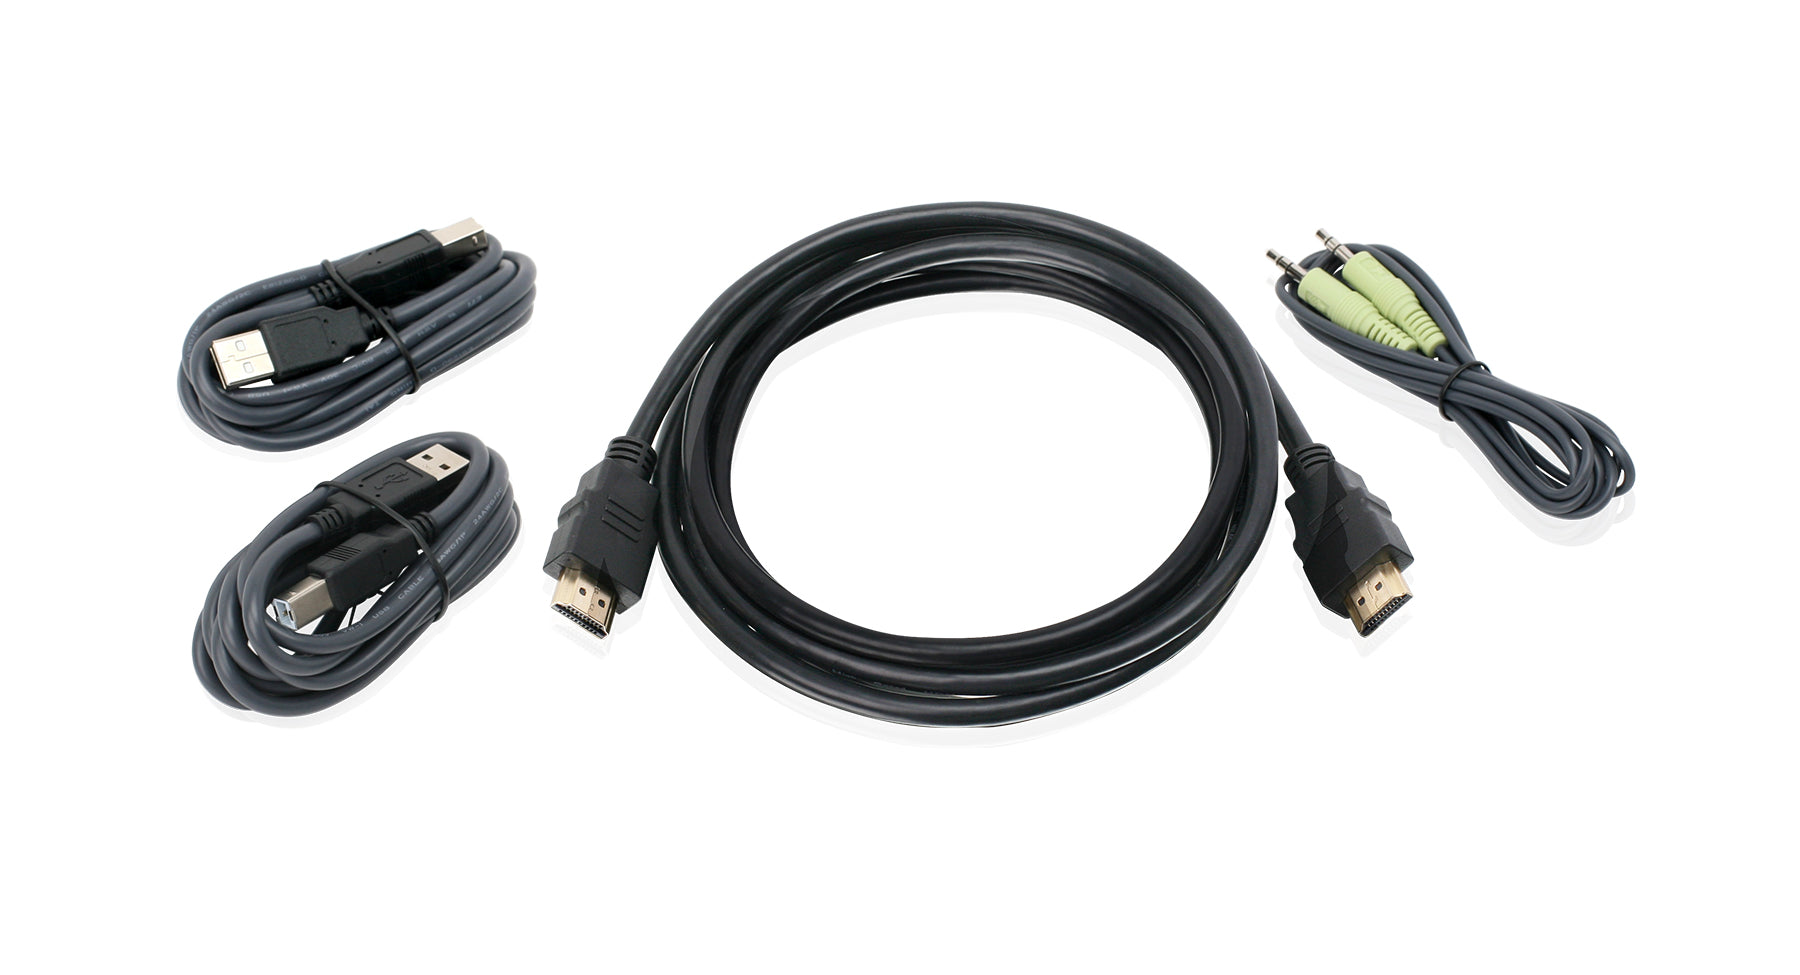 USB KVM Cable